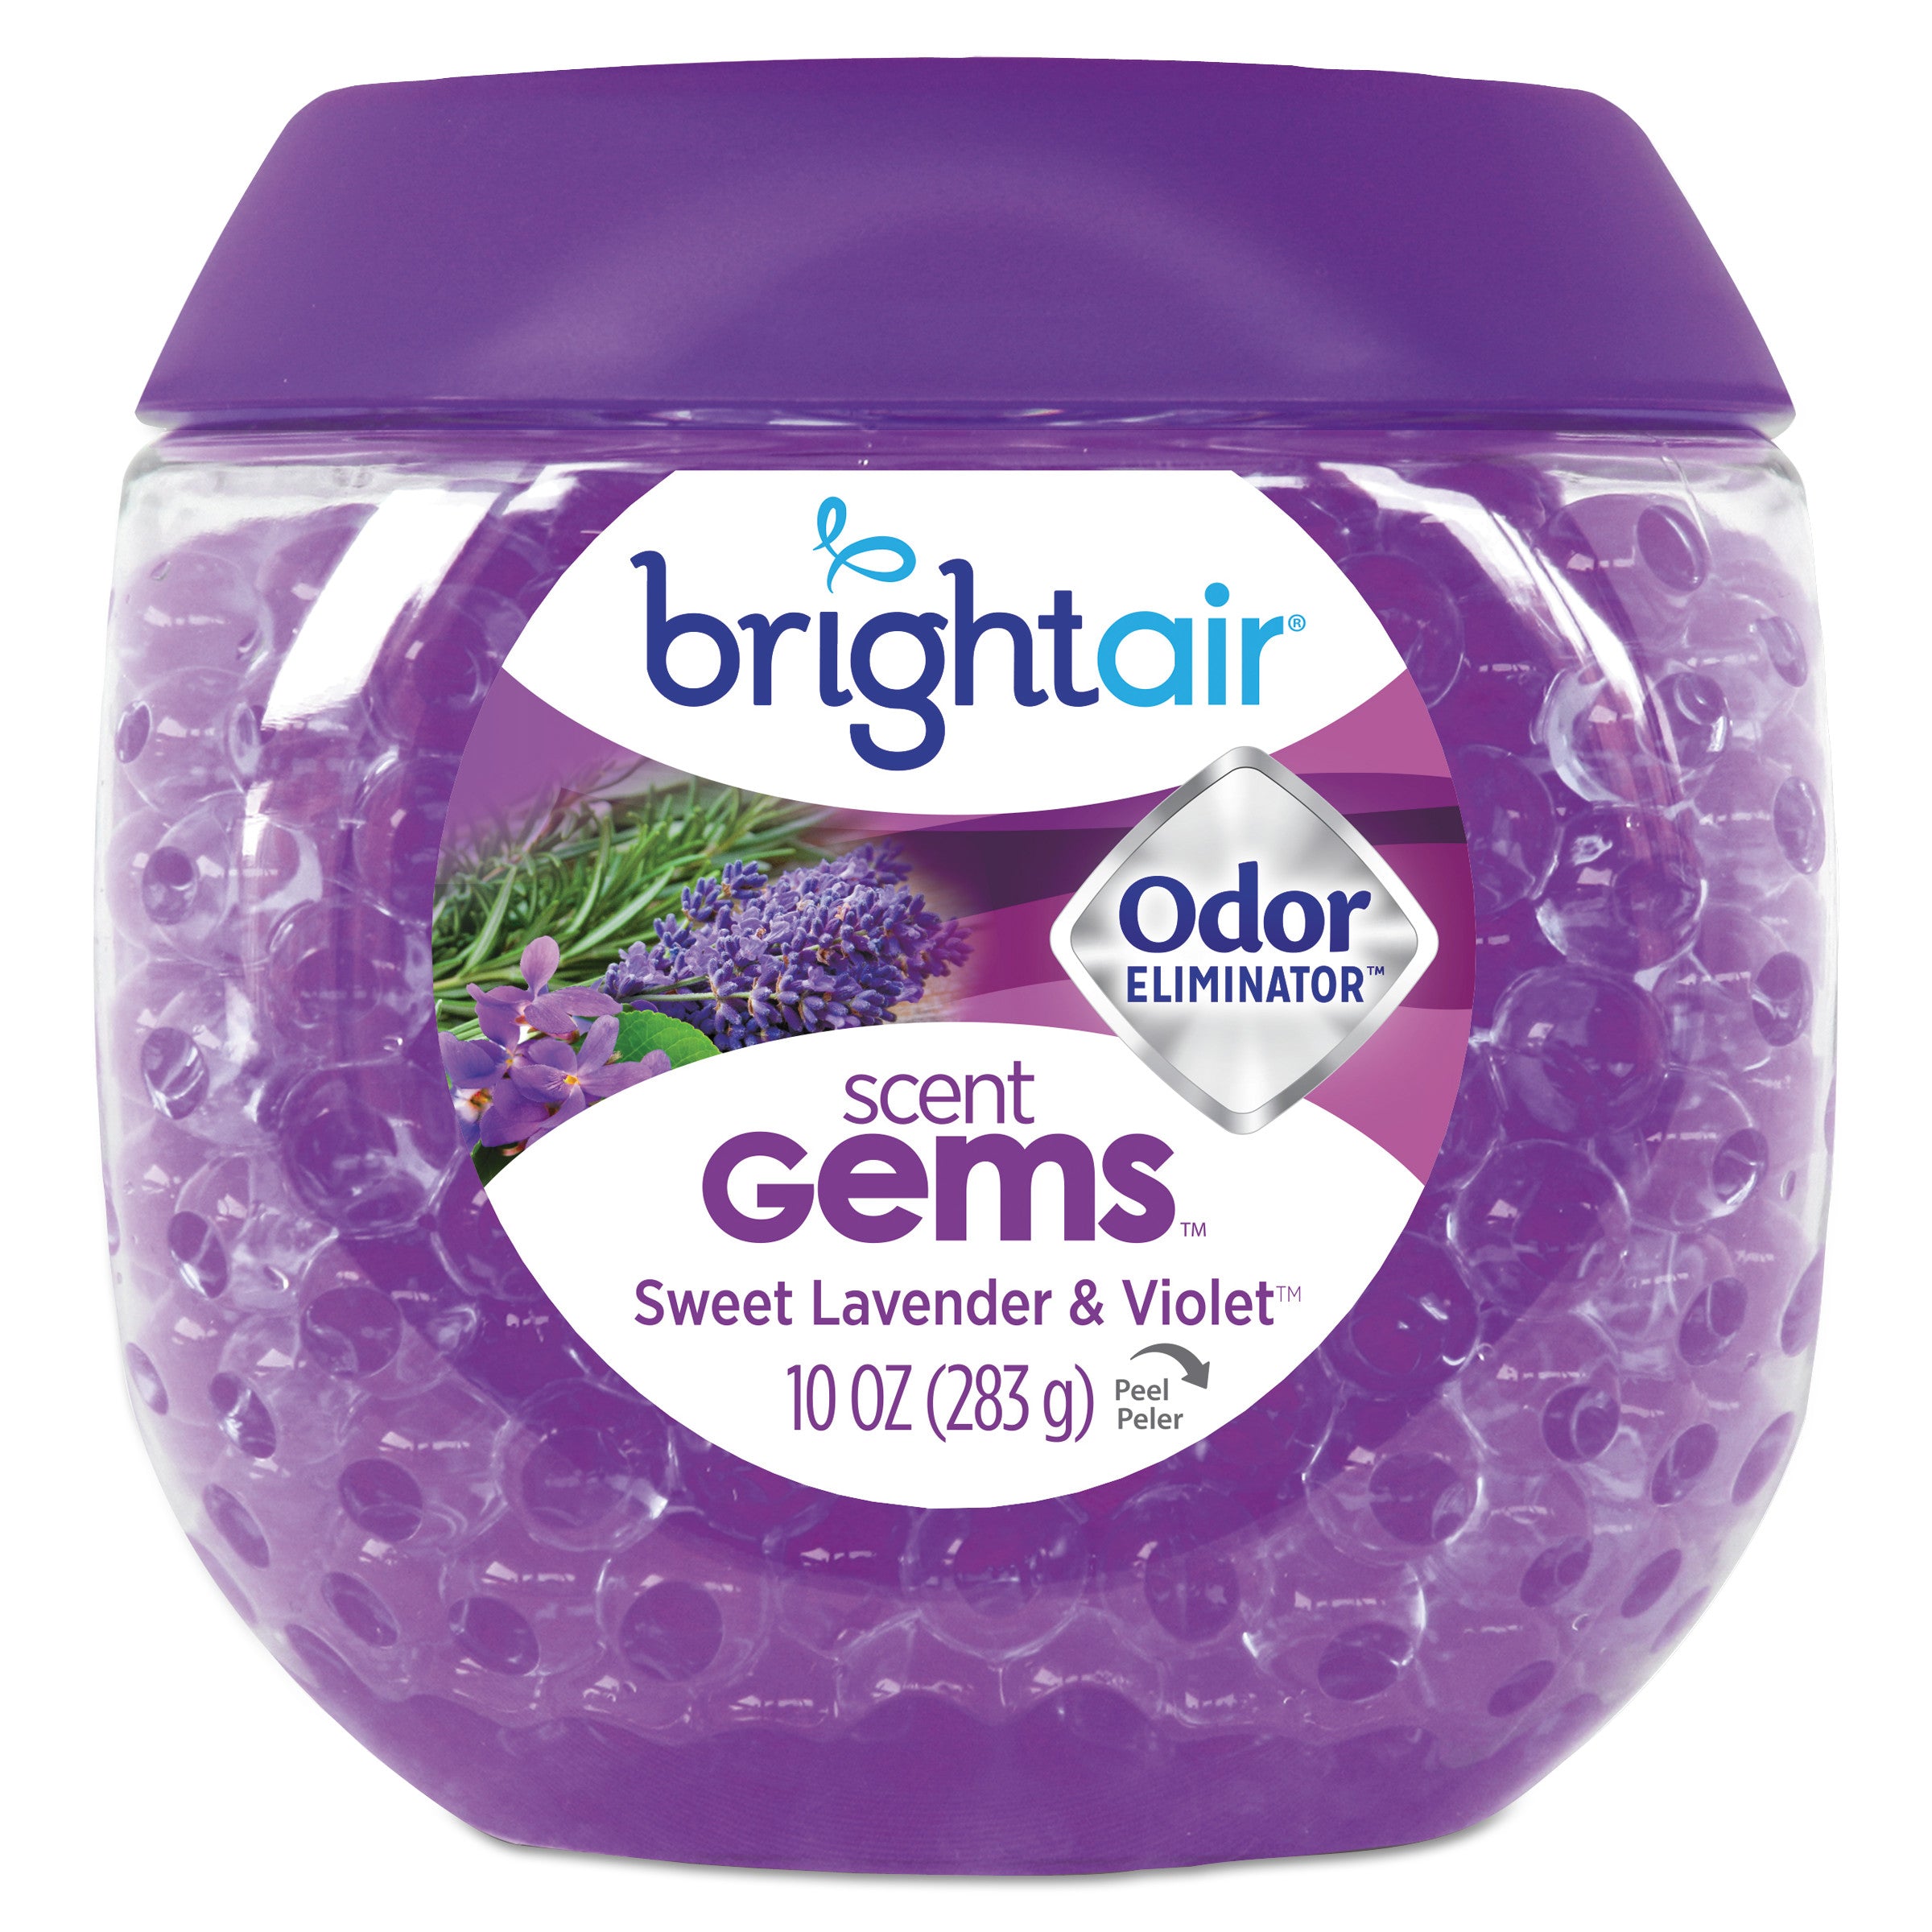 scent-gems-odor-eliminator-sweet-lavender-and-violet-10-oz-jar_bri900426ea - 1